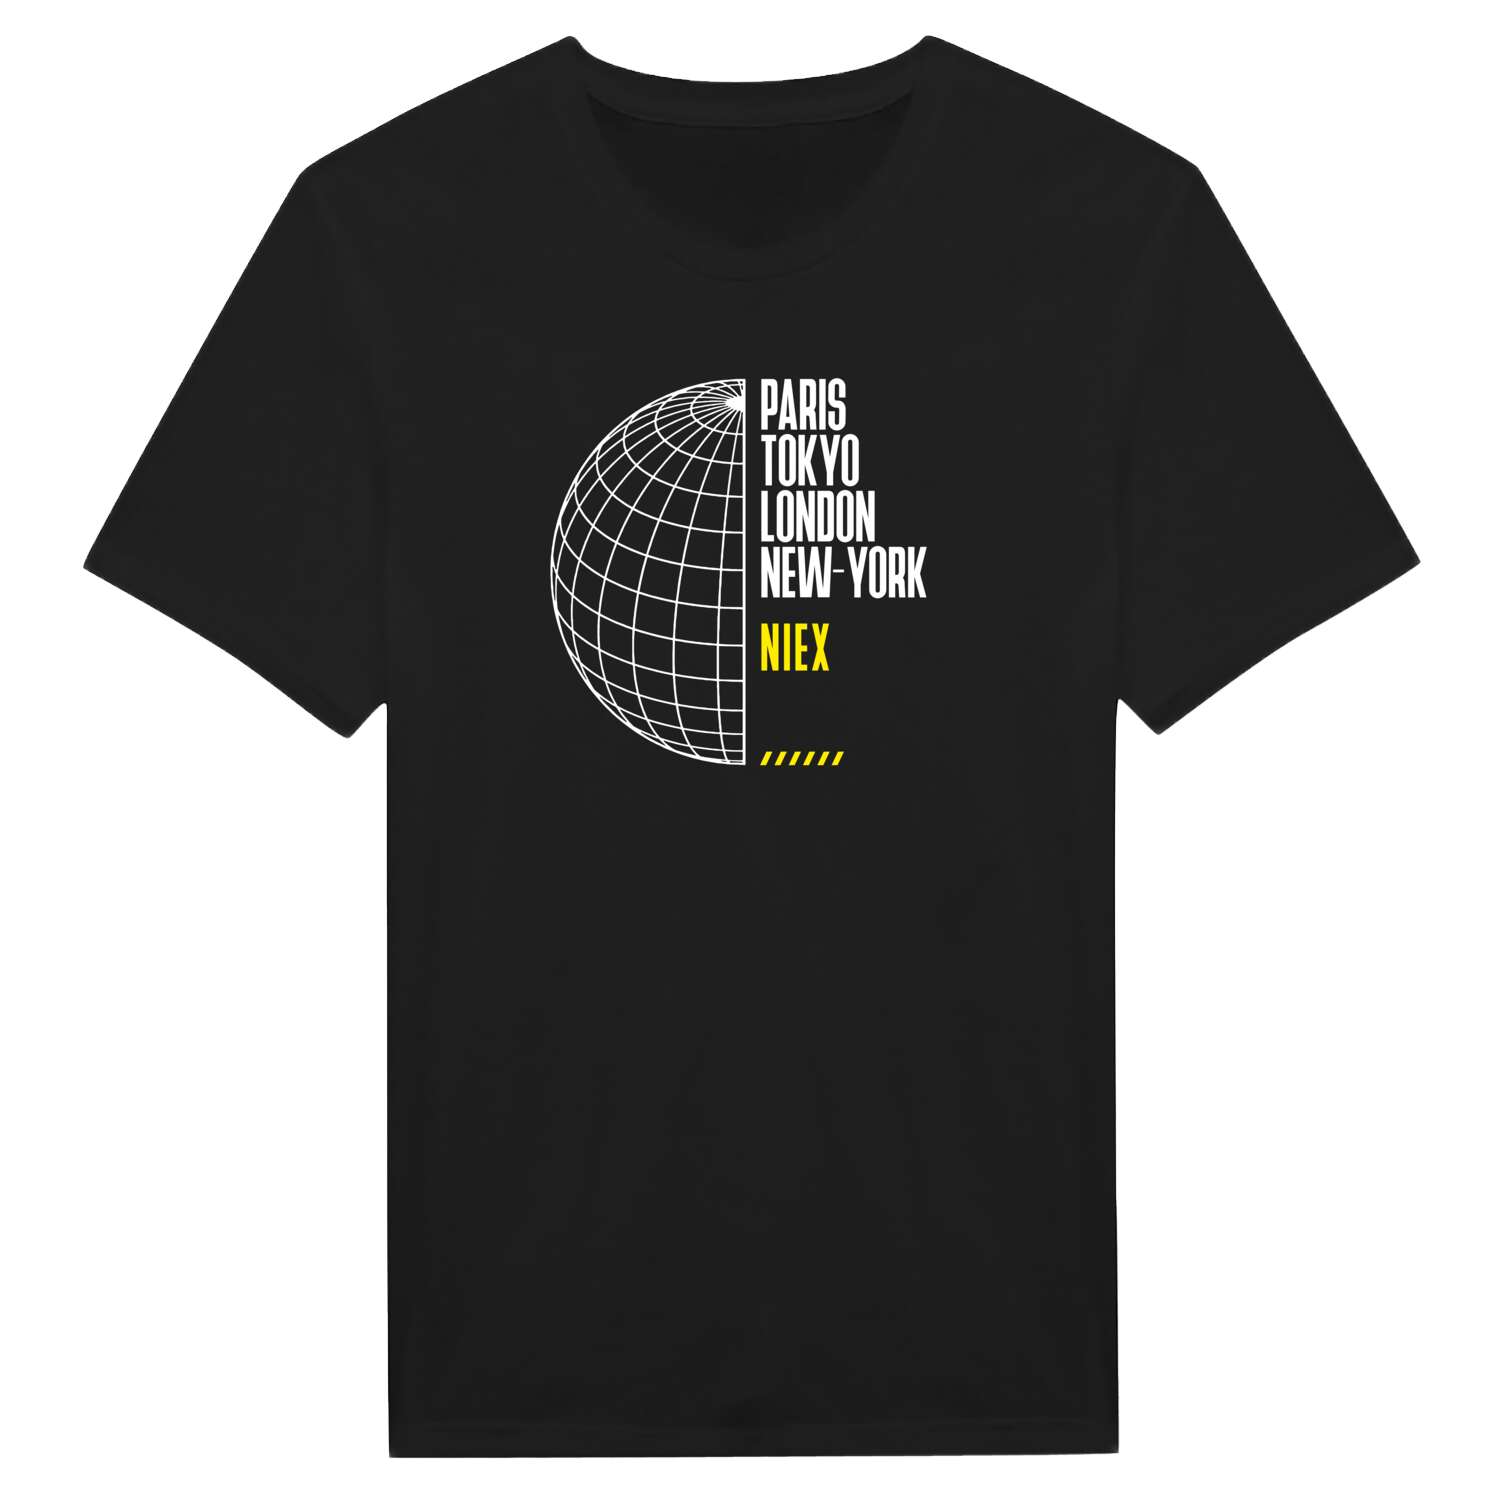 Niex T-Shirt »Paris Tokyo London«